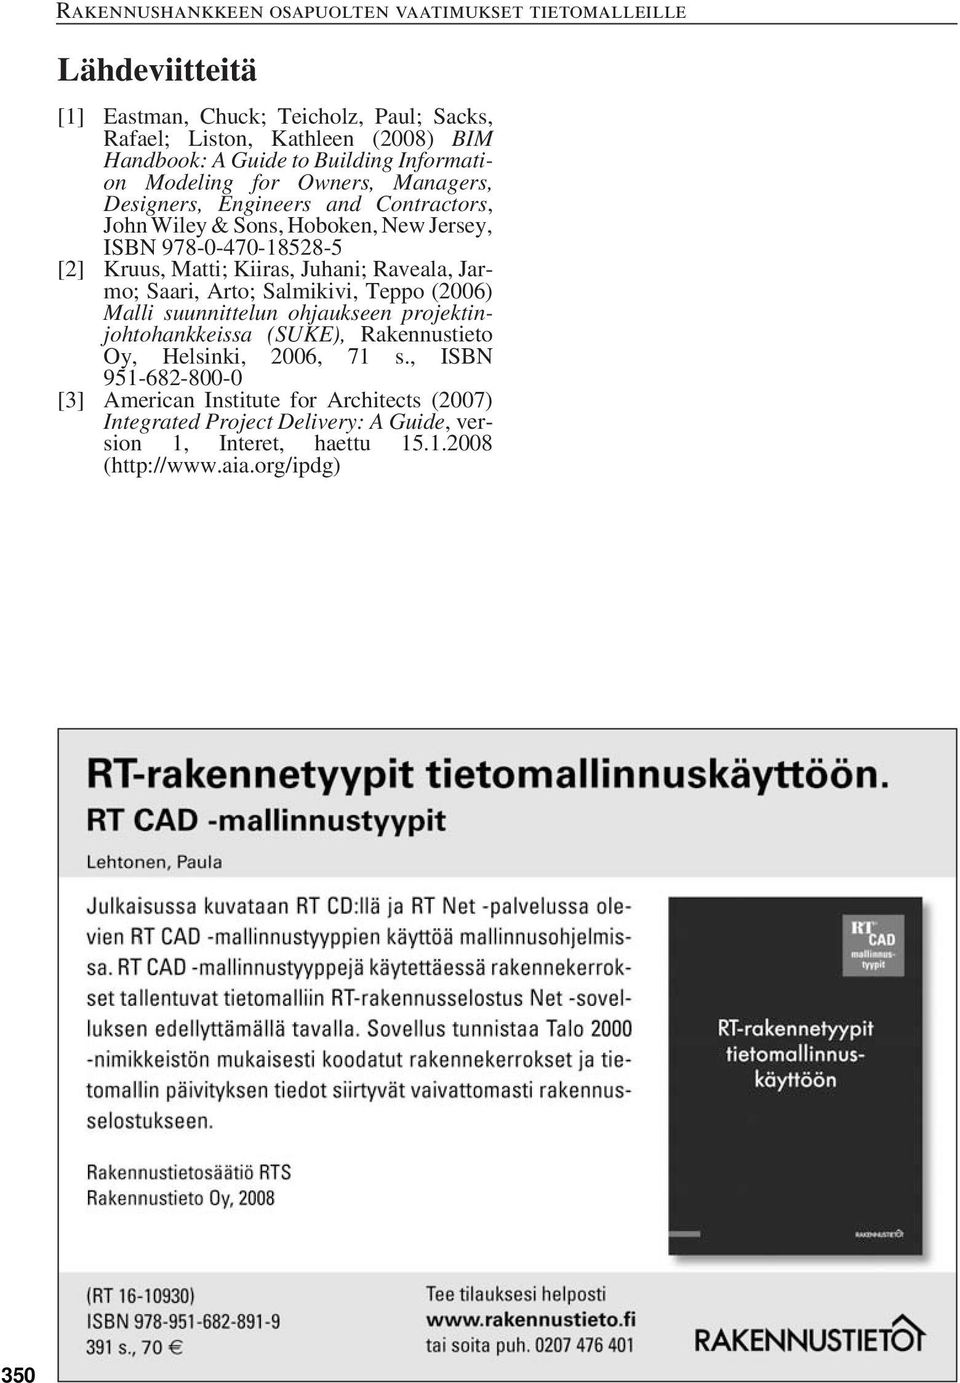 Jarmo; Saari, Arto; Salmikivi, Teppo (2006) Malli suunnittelun ohjaukseen projektinjohtohankkeissa (SUKE), Rakennustieto Oy, Helsinki, 2006, 71 s.